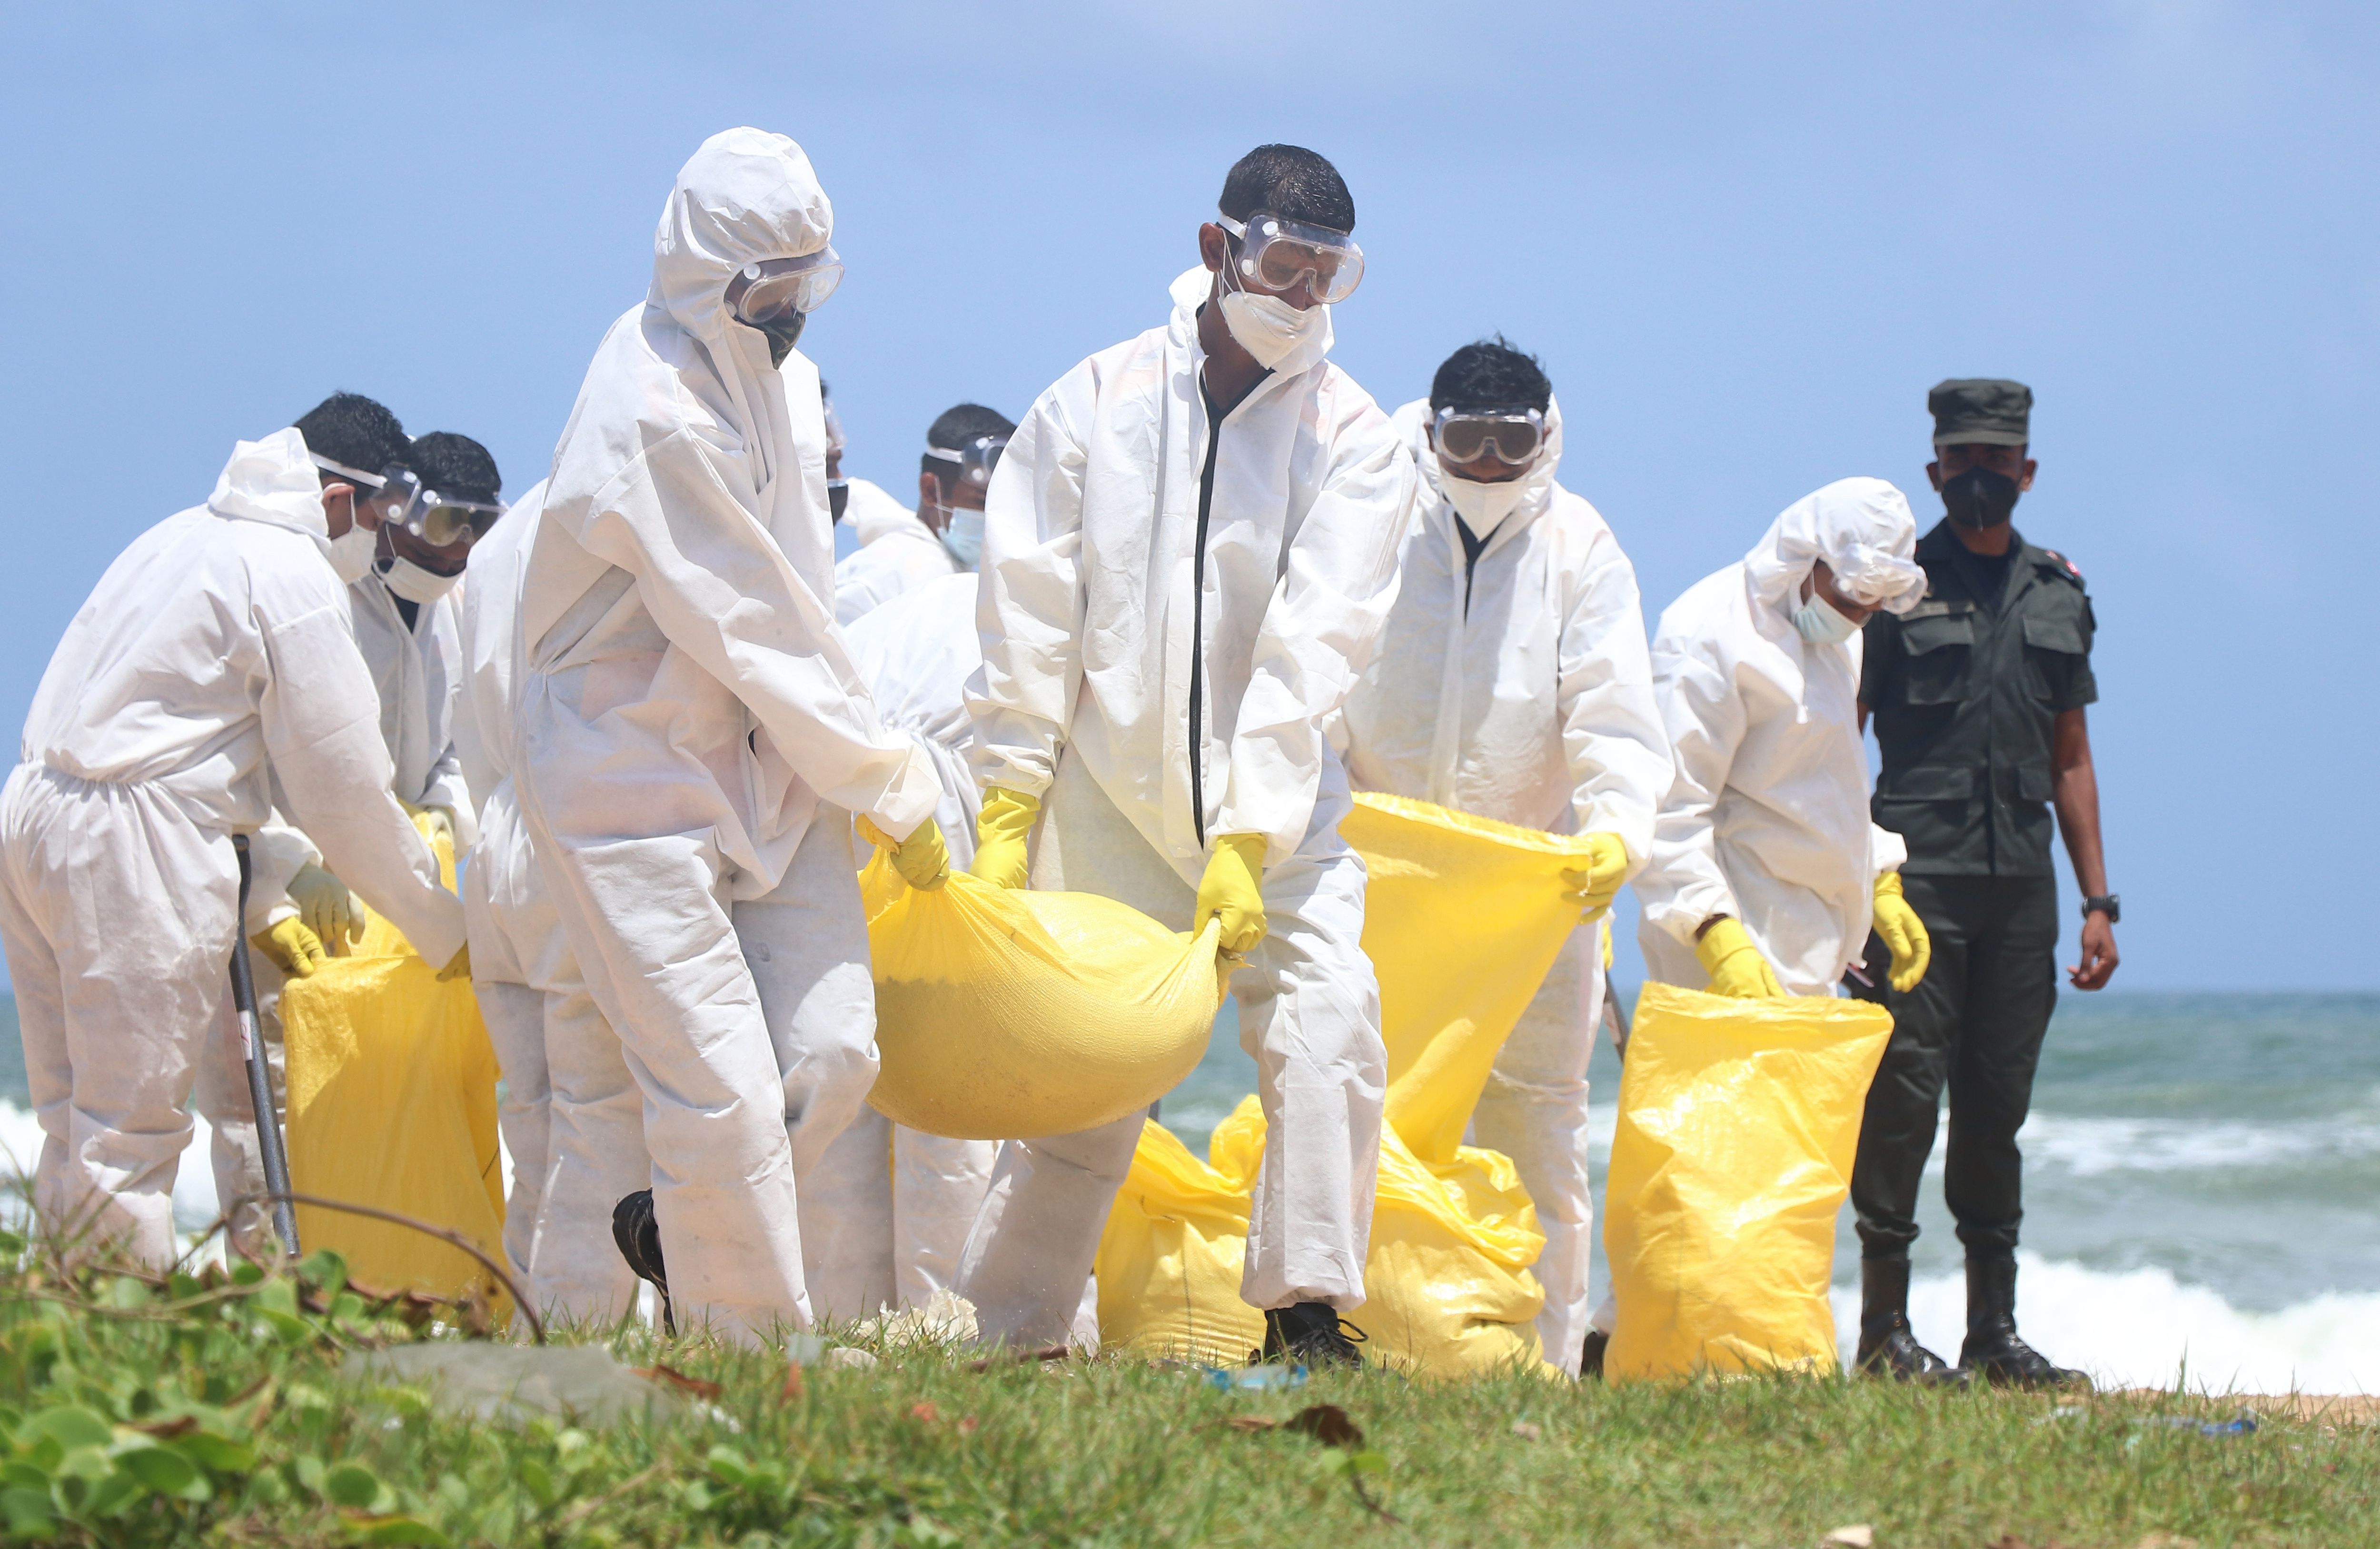 Sri Lanka Army personnel remove debris on the beach at Moratuwa, near Colombo